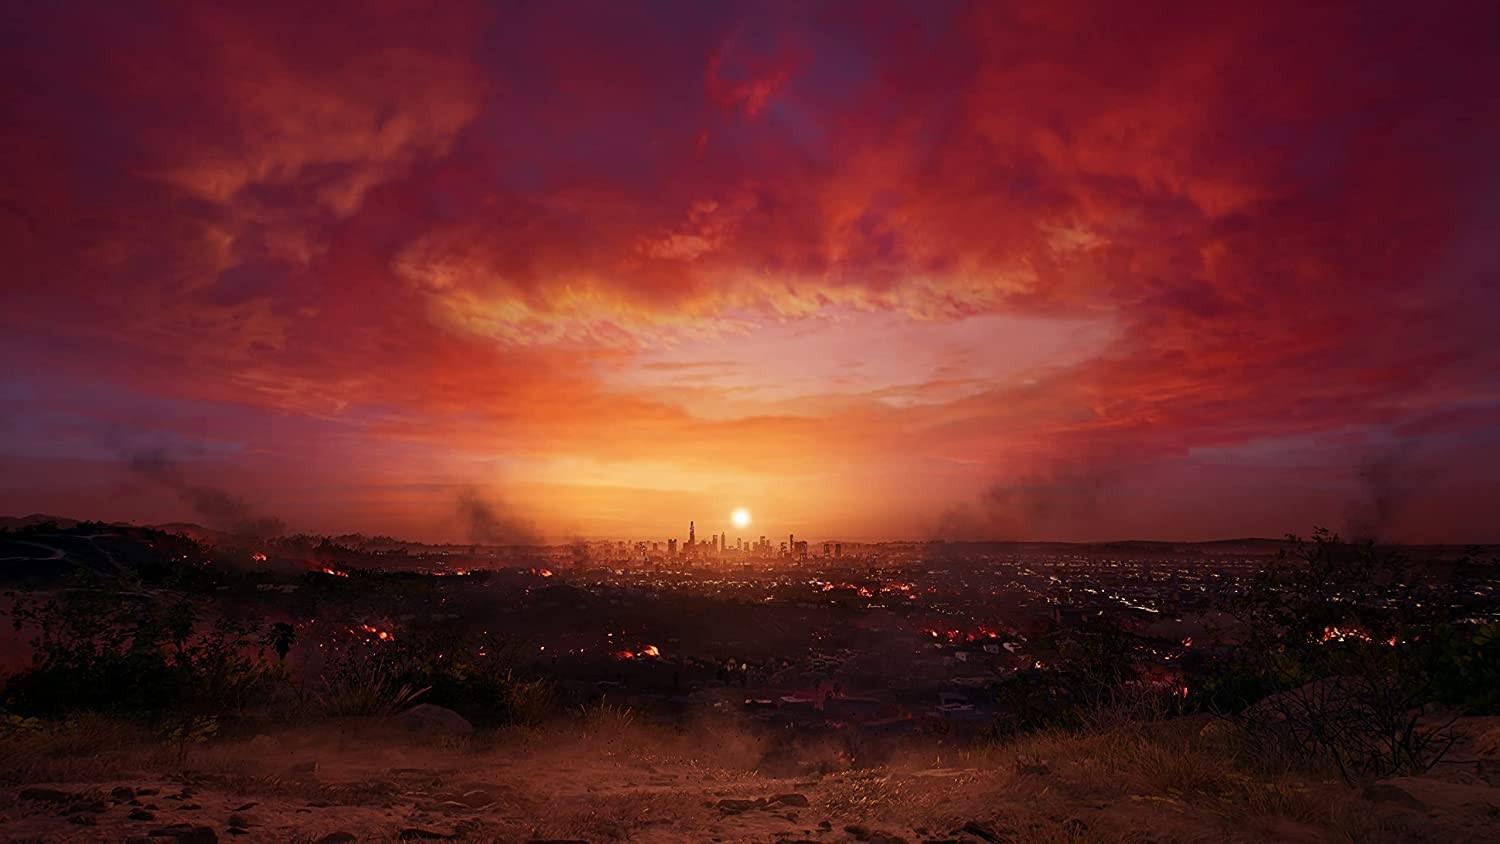 喪屍新作《Dead Island 2》被洩露 將於2023年2月3日發售